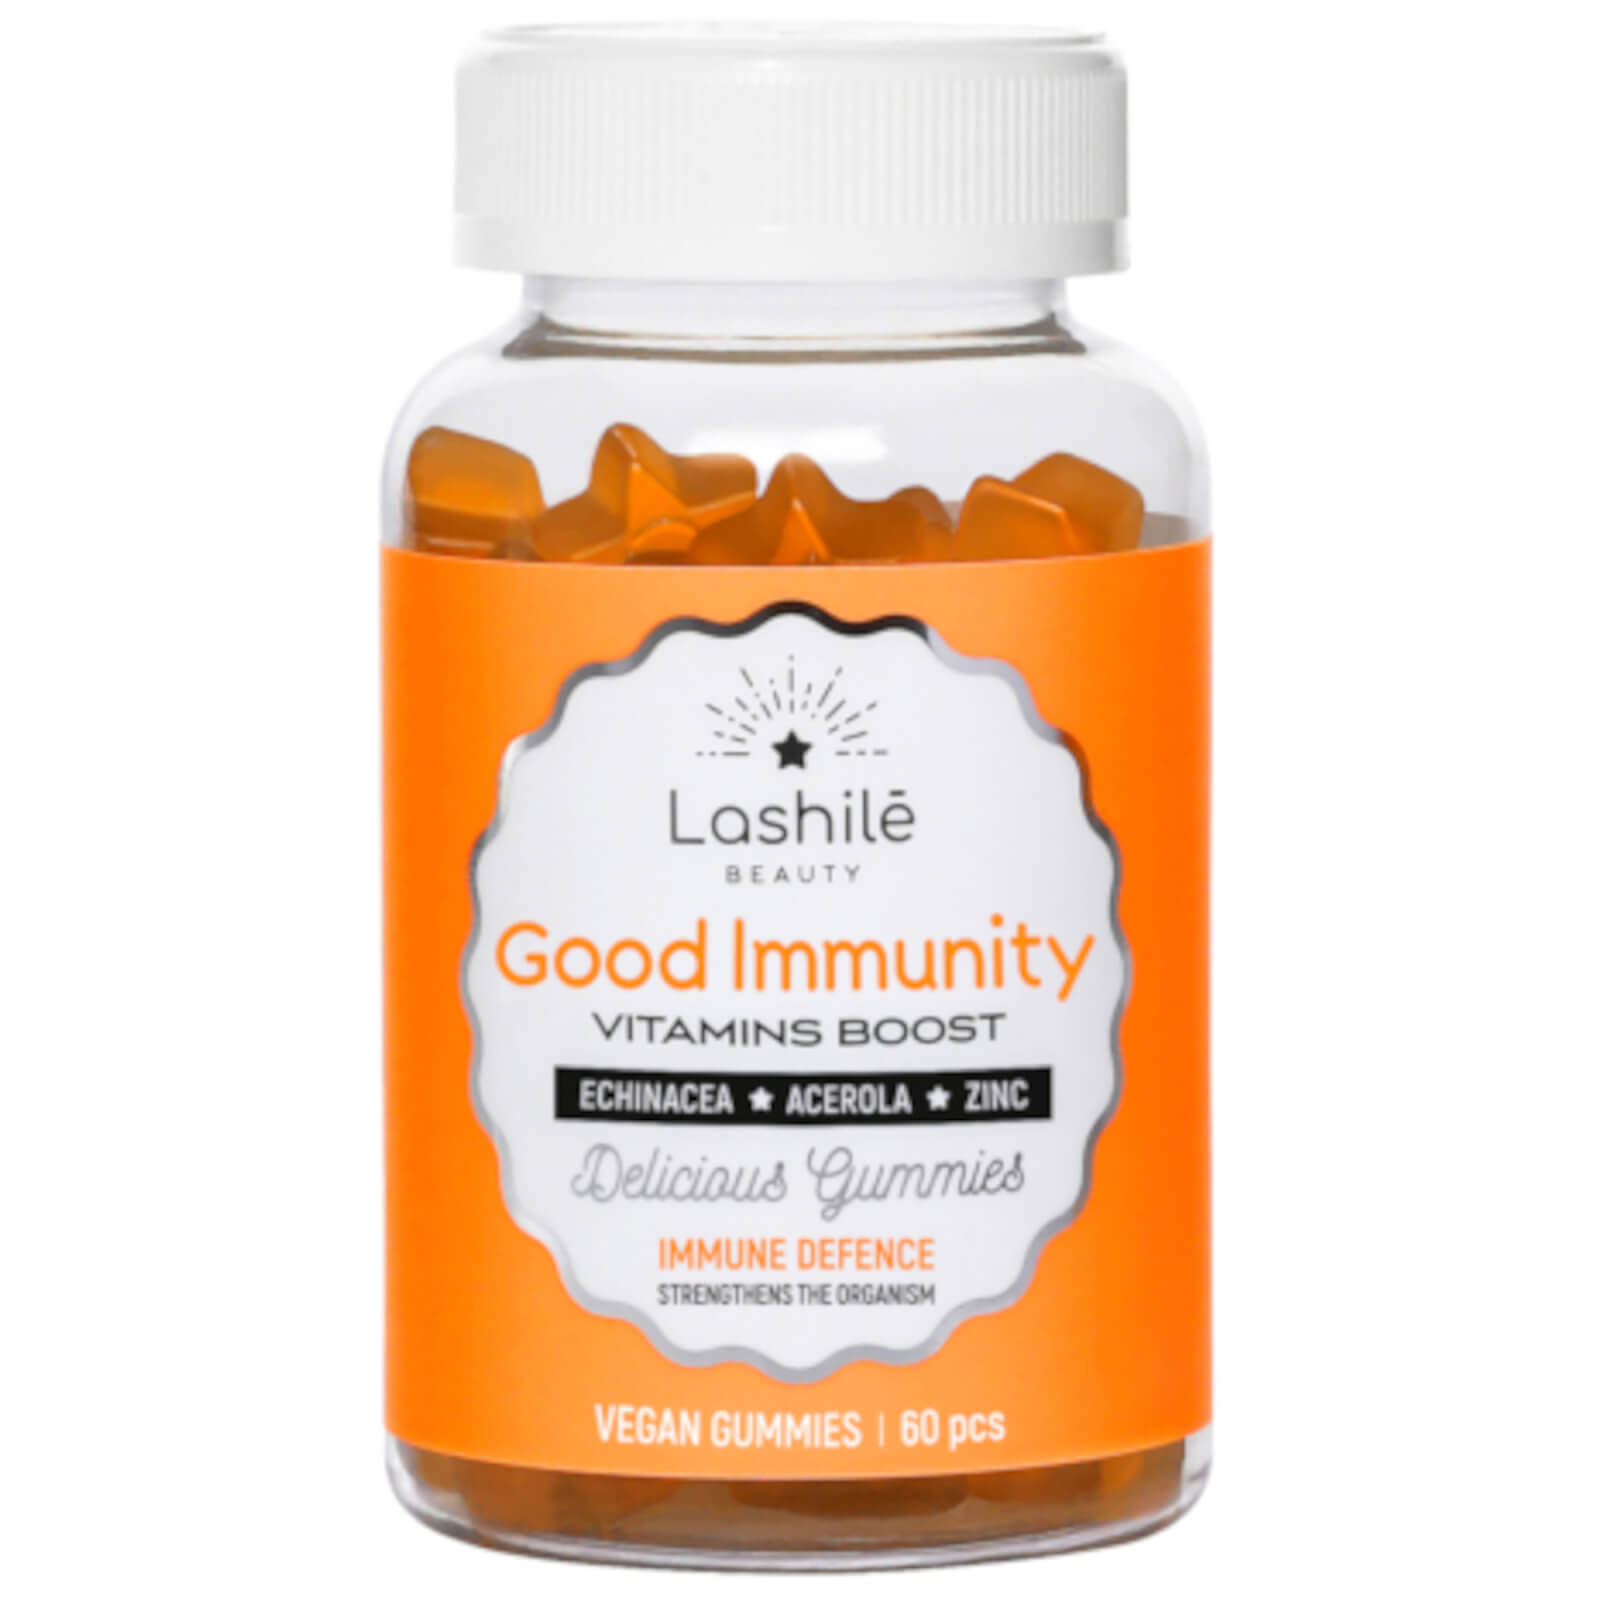 Lashilé Good Immunity Supplements 150g In Orange